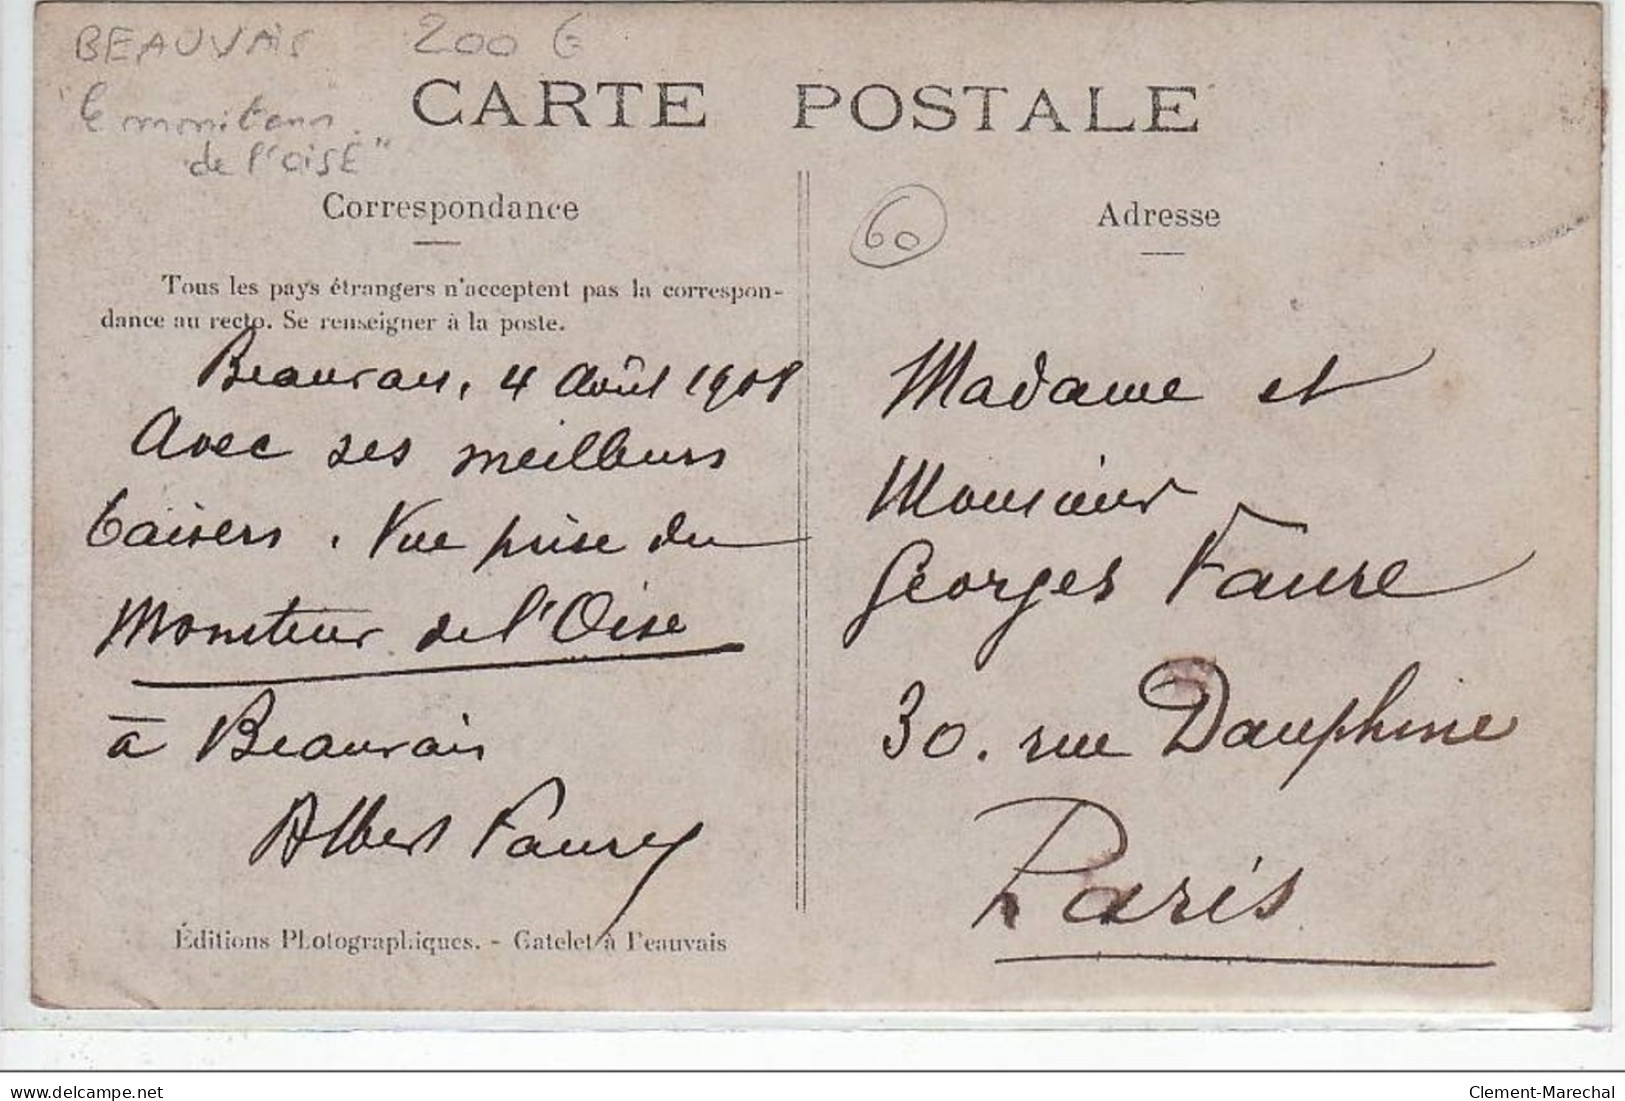 BEAUVAIS : Carte Photo Du Personnel Du"""" Moniteur De L'Oise"""" En 1908 (presse - Journal) - Très Bon état - Beauvais